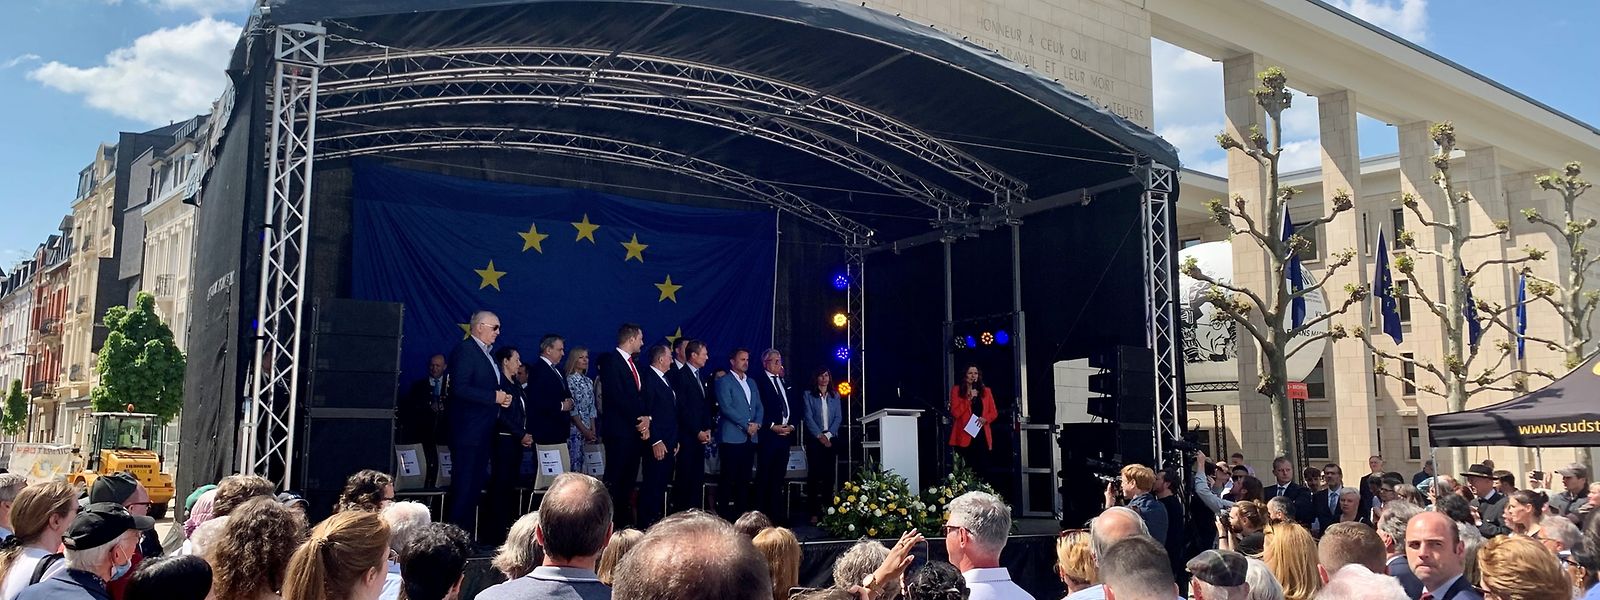 La cérémonie d'ouverture de la journée de l'Europe s'est achevée sur l'écoute de l'hymne officiel de l'Union européenne et de l'hymne national ukrainien, joués par les enseignants du conservatoire de la Ville d'Esch.